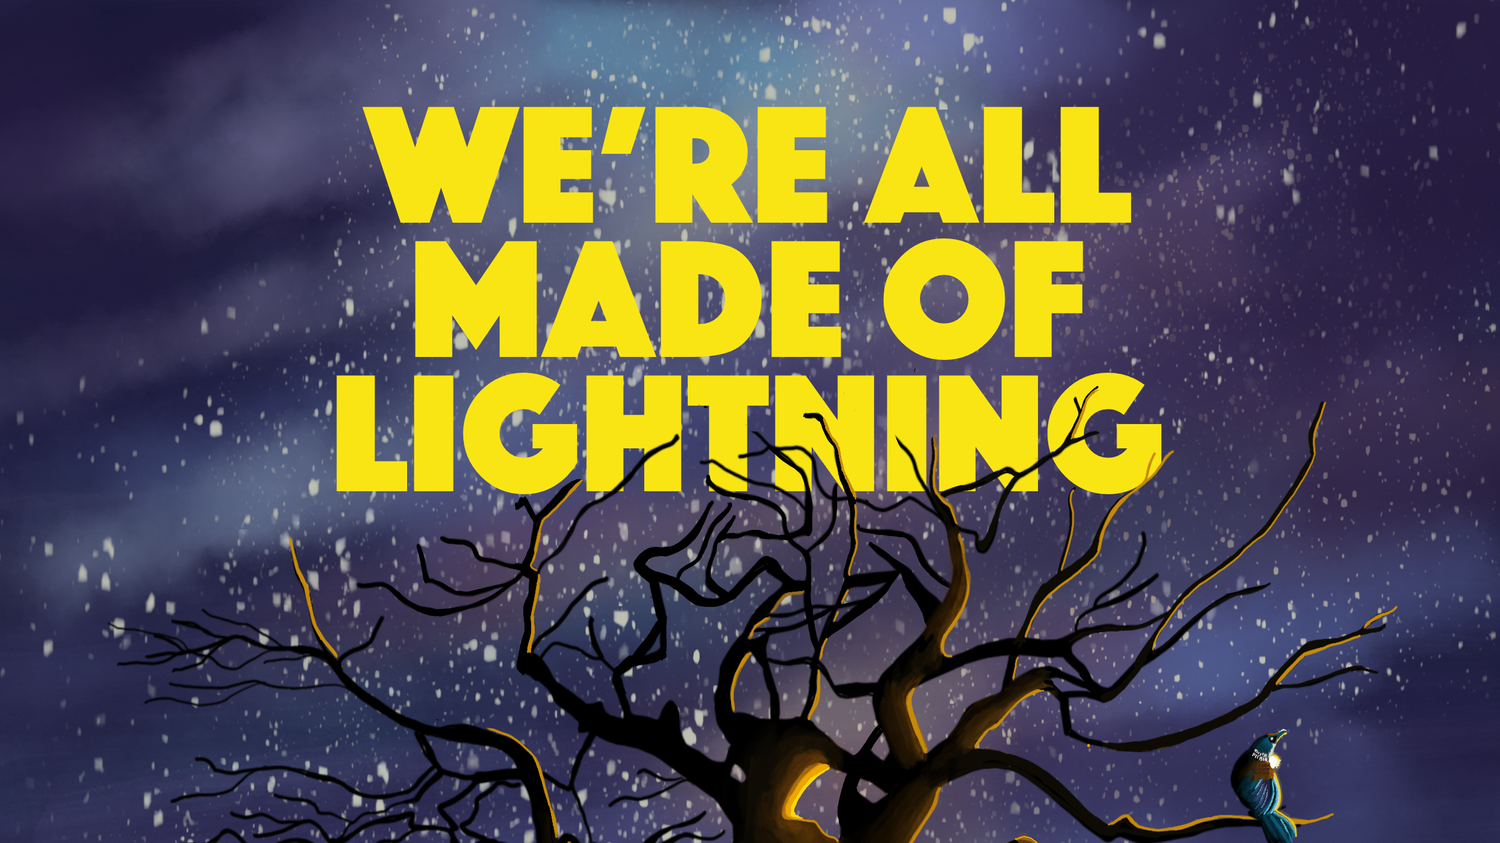 We’re All Made of Lightning by Khadro Mohamed